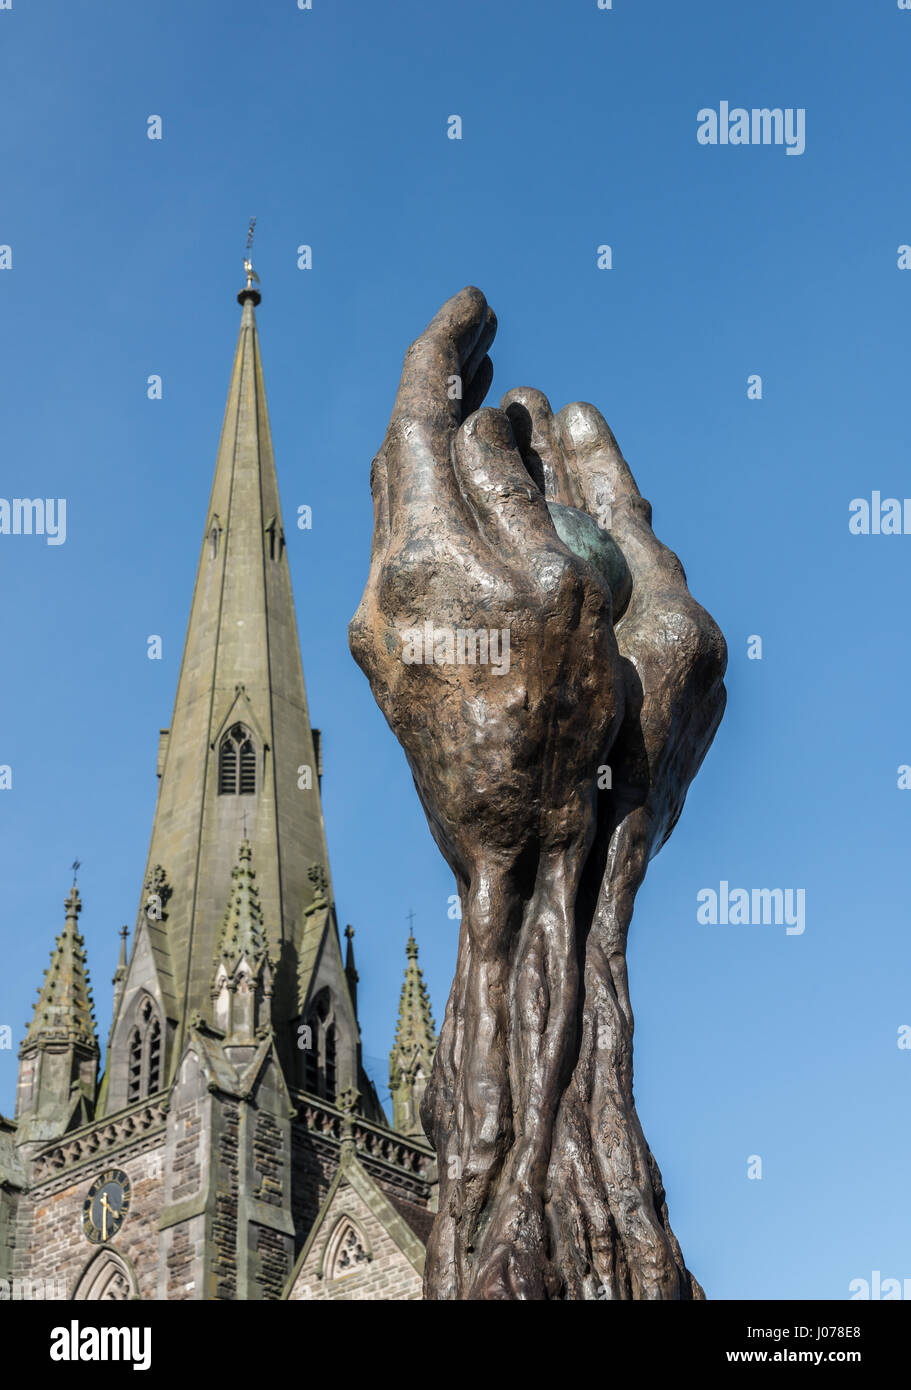 Arbre de Vie Memorial, St. Martins dans les arènes, Birmingham (Angleterre). Statue d'une paire de mains tenant le monde sculpté par Lorenzo Quinn. Banque D'Images